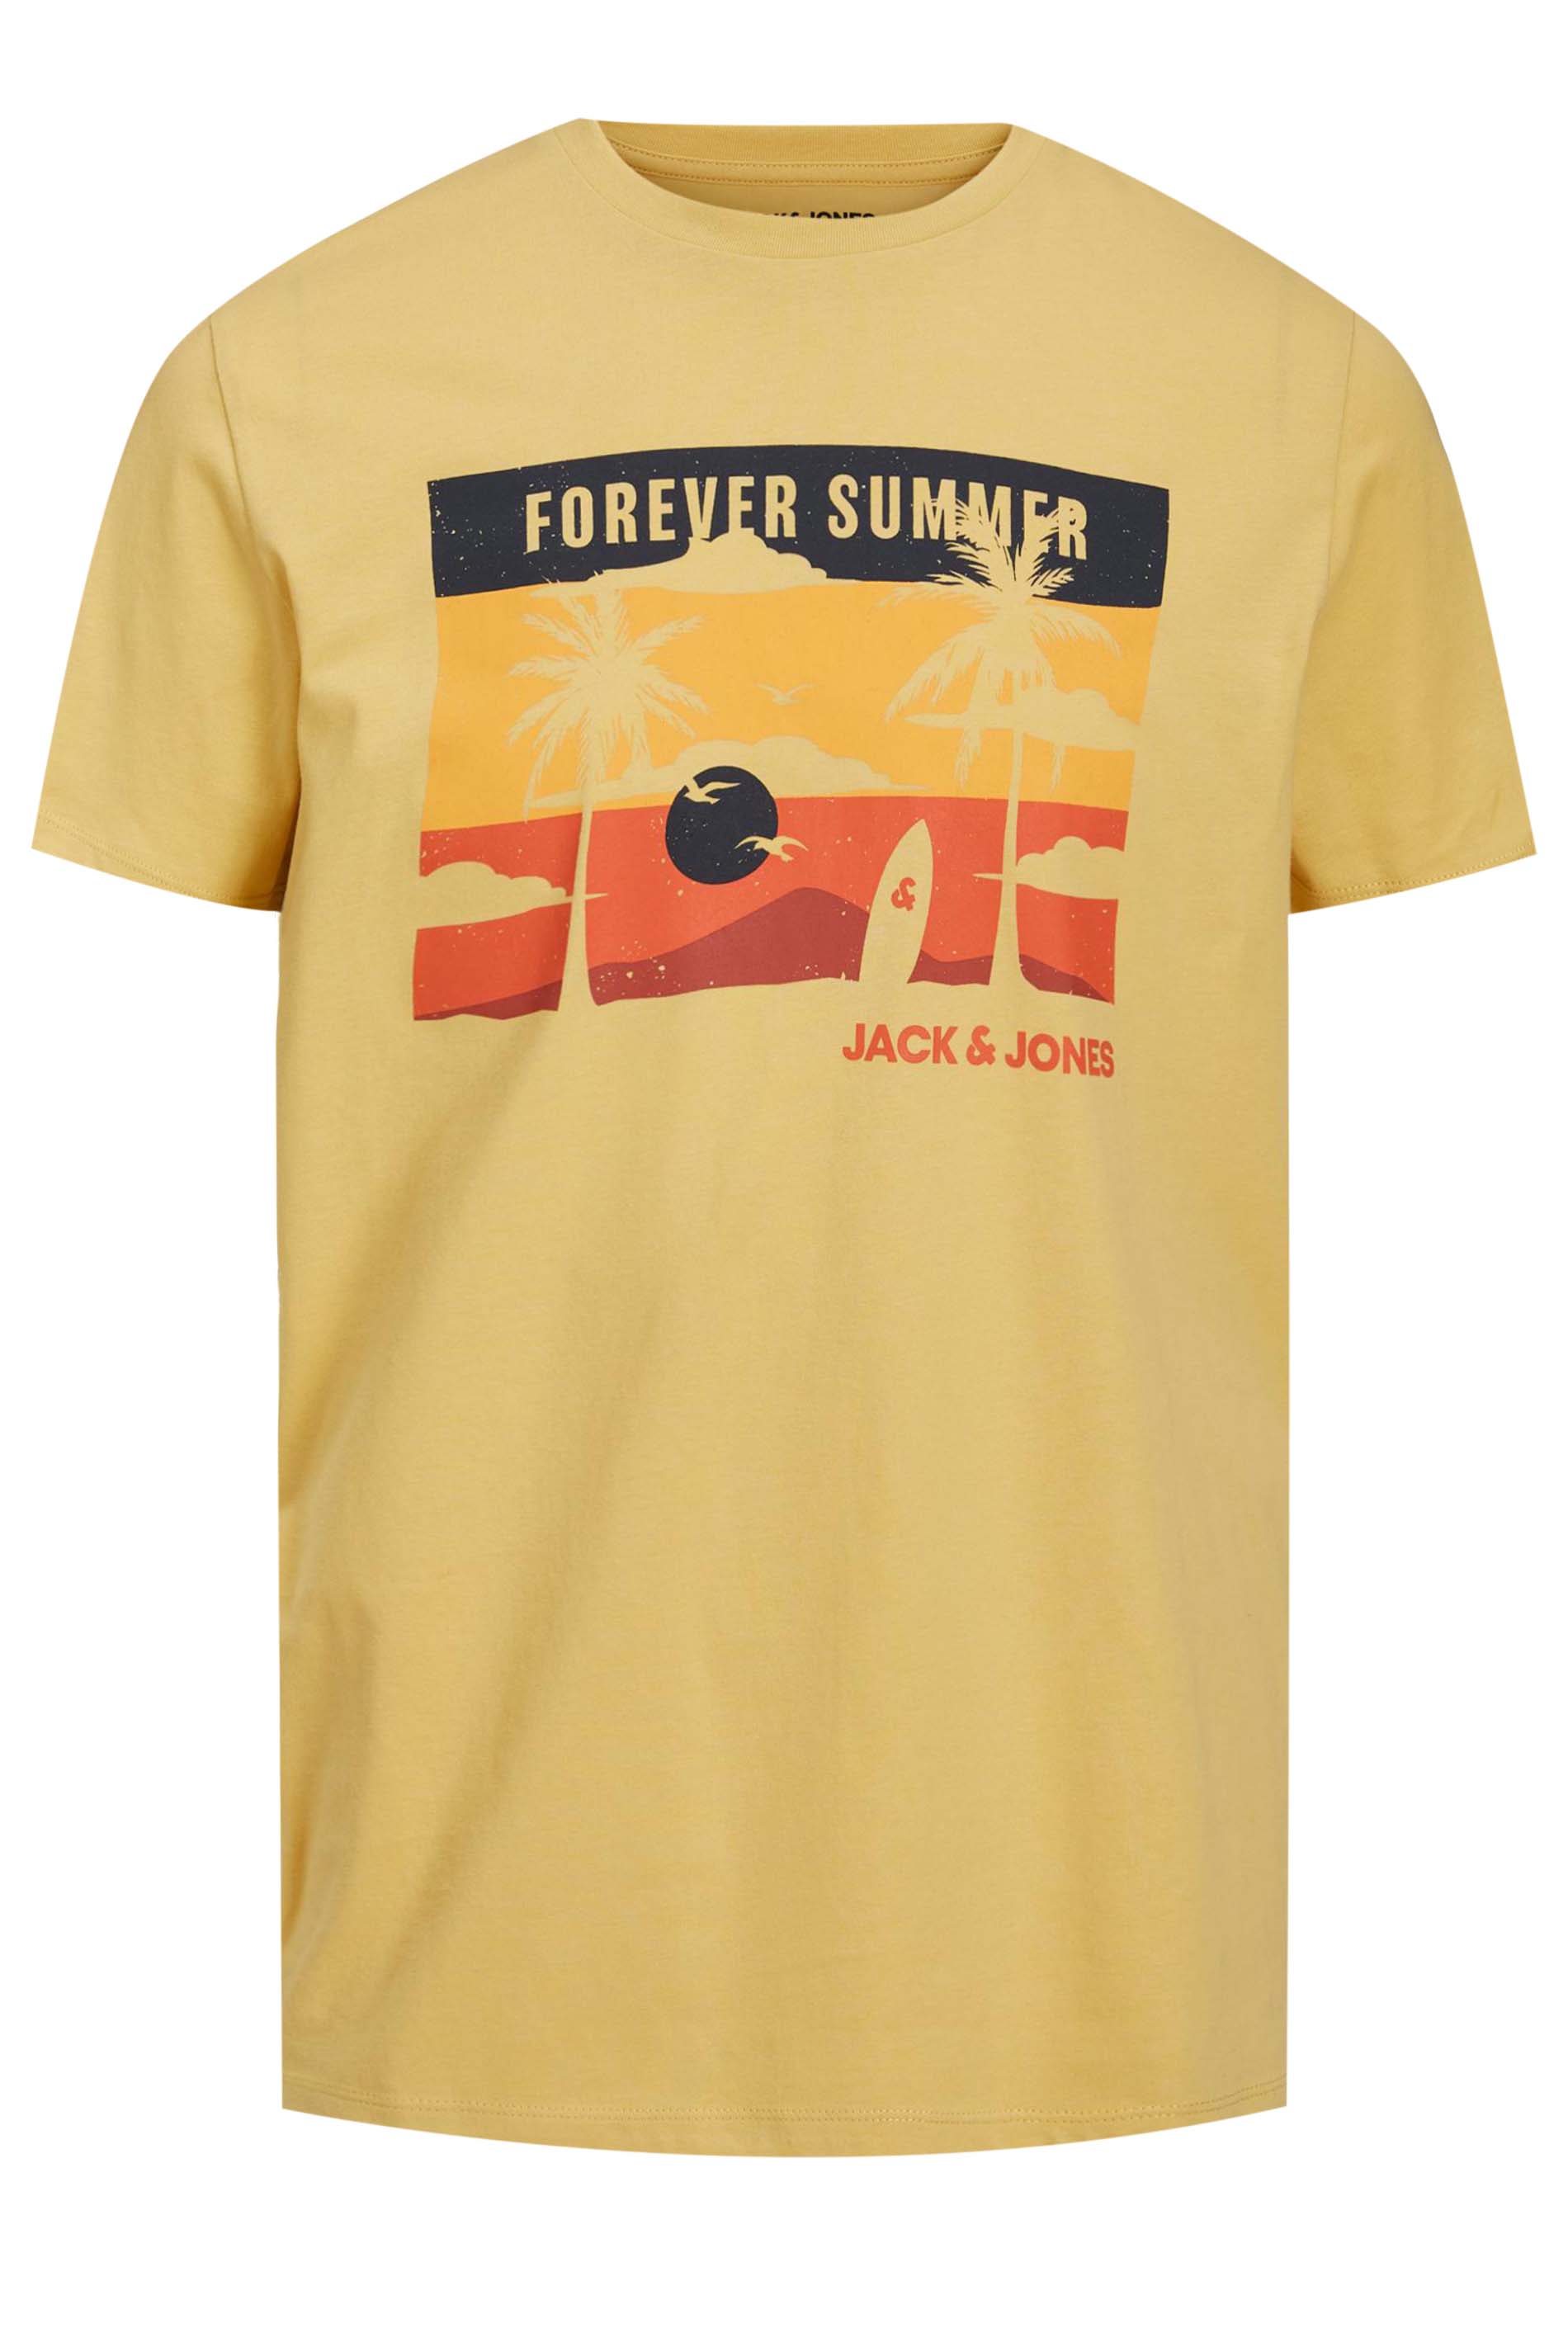 JACK & JONES Big & Tall Yellow 'Forever Summer' Print T-Shirt | BadRhino 2